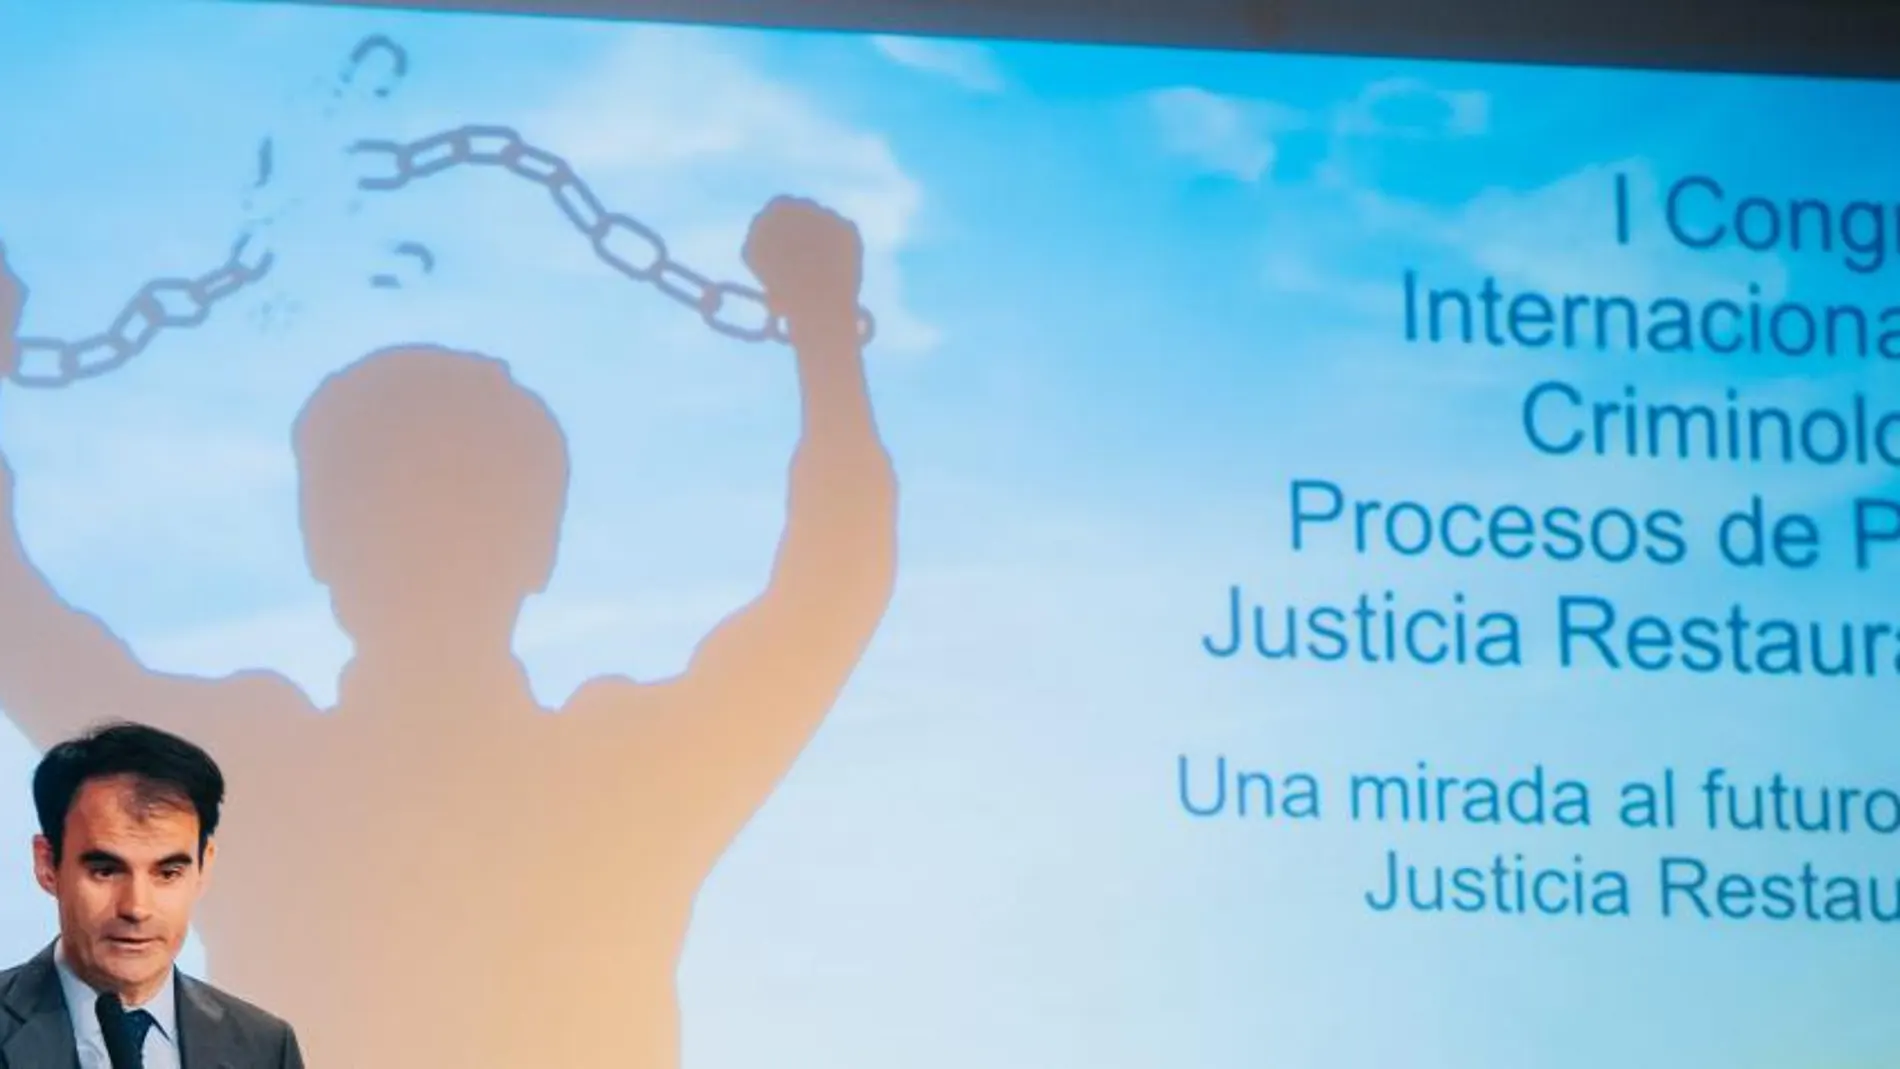 El juez Ruz clausuró en Valencia el Congreso sobre Criminología, procesos de paz y justicia restitutiva, que organizó la Universidad Internacional de Valencia (VIU)